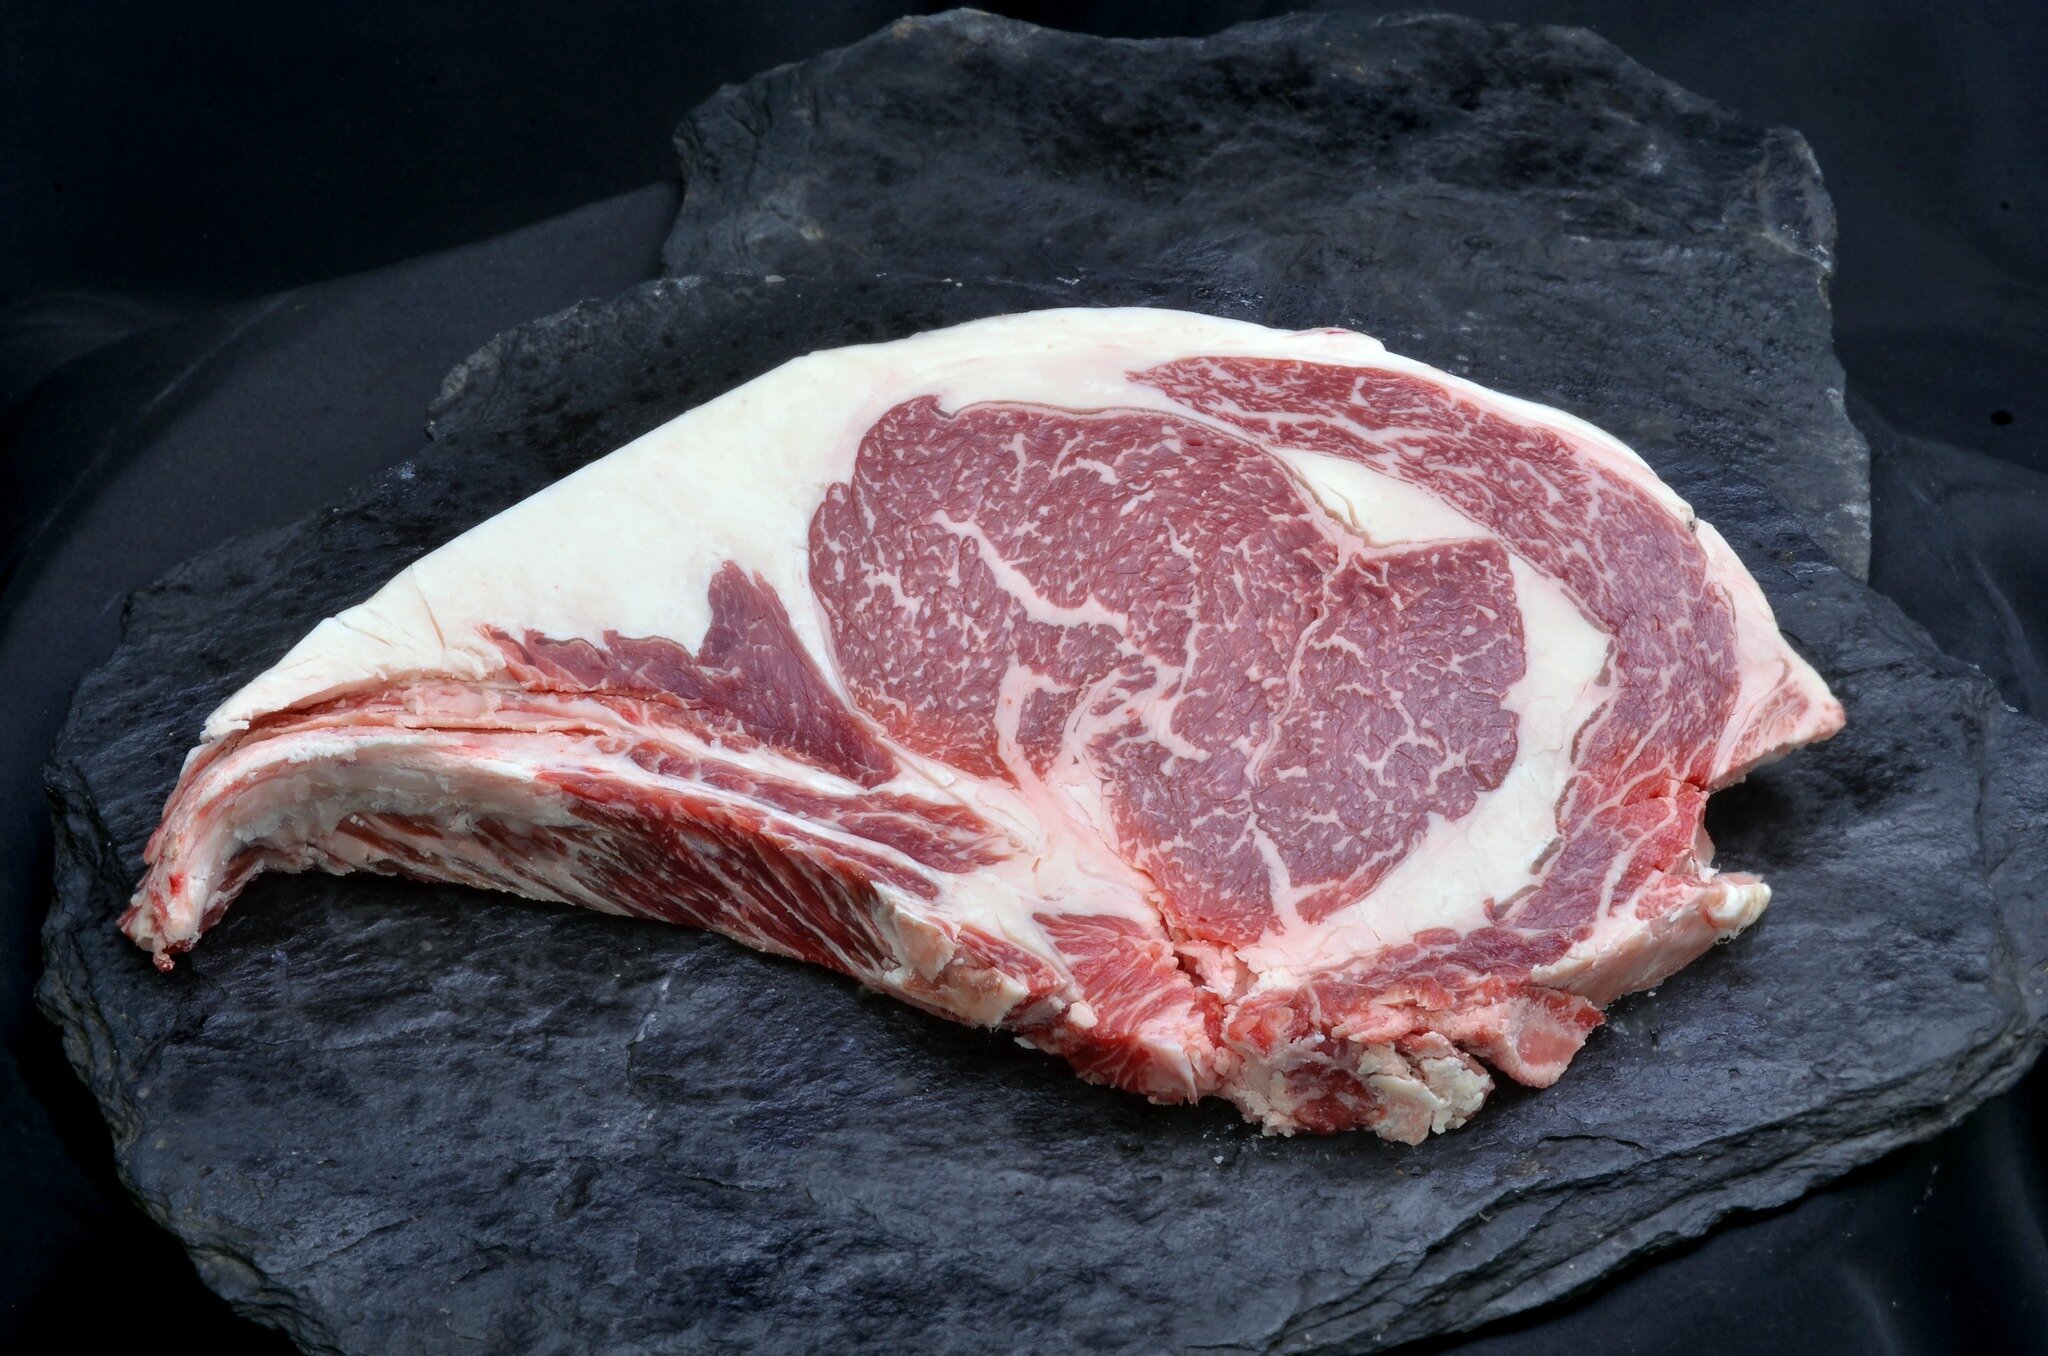 Quand il s'agit de steak, rien ne vaut une entrec&ocirc;te de boeuf Wagyu parfaitement cuite ! 🥩 Le marbrage de cette viande cr&eacute;e une texture fondante en bouche et une profondeur de saveur incomparable. Que vous pr&eacute;f&eacute;riez le fai